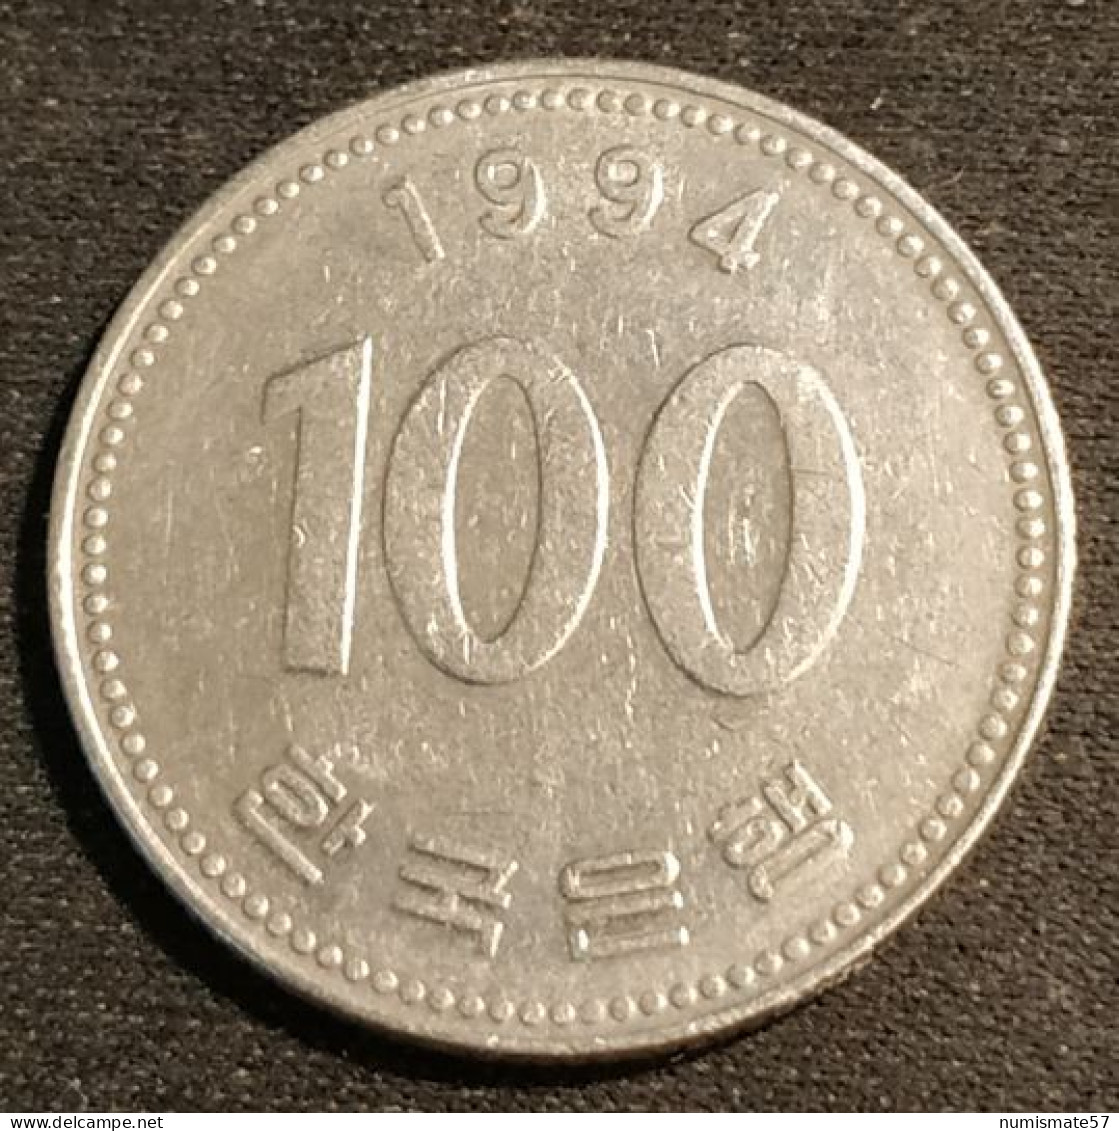 COREE DU SUD - SOUTH KOREA - 100 WON 1994 - KM 35 - Korea (Zuid)